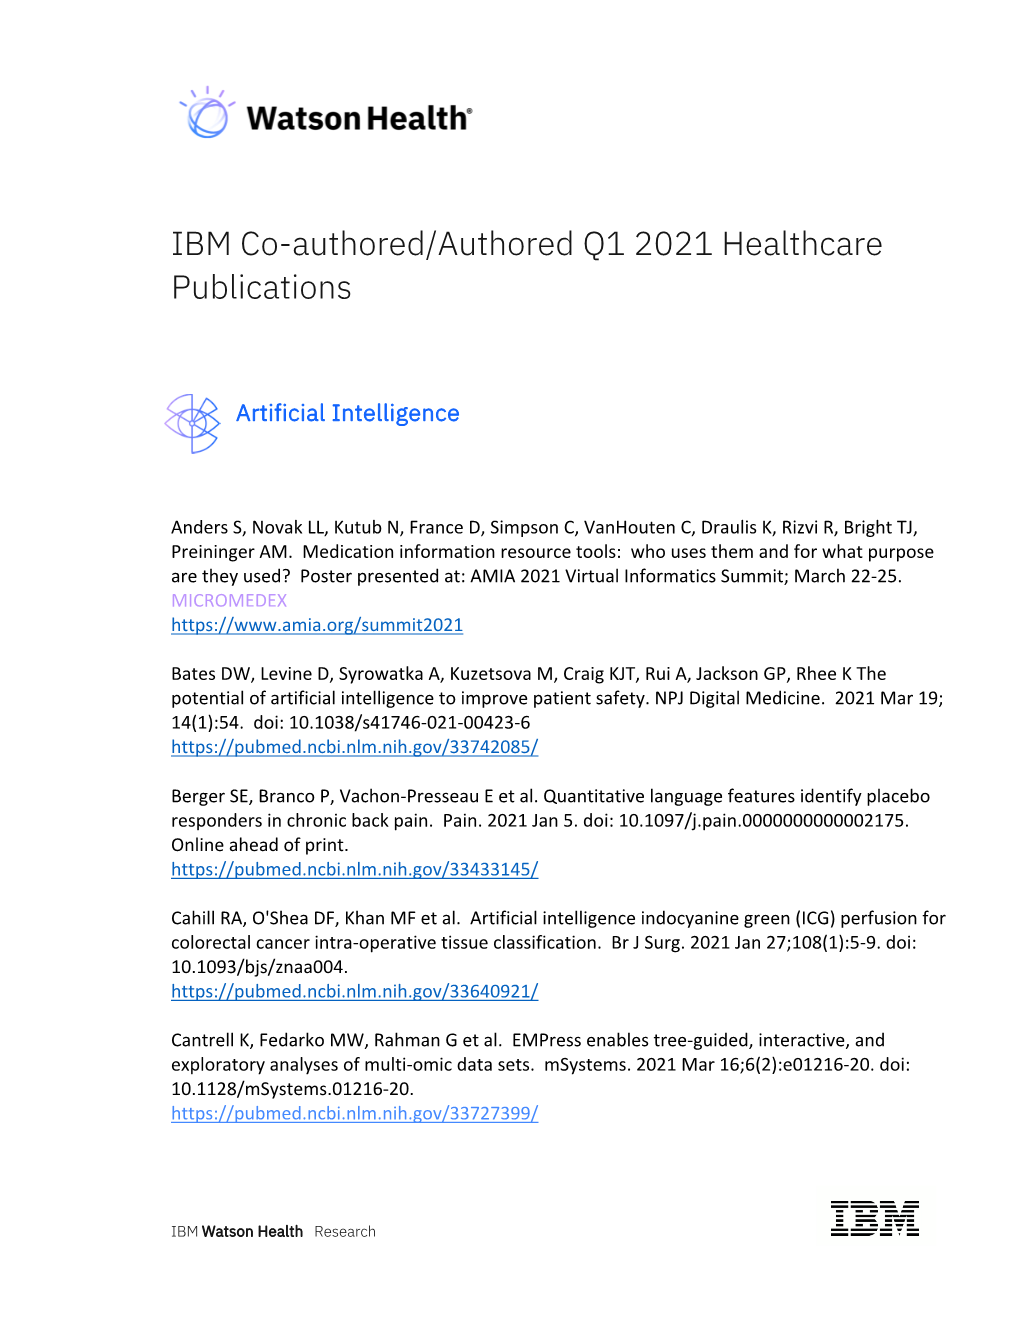 IBM Co-Authored/Authored Q1 2021 Healthcare Publications